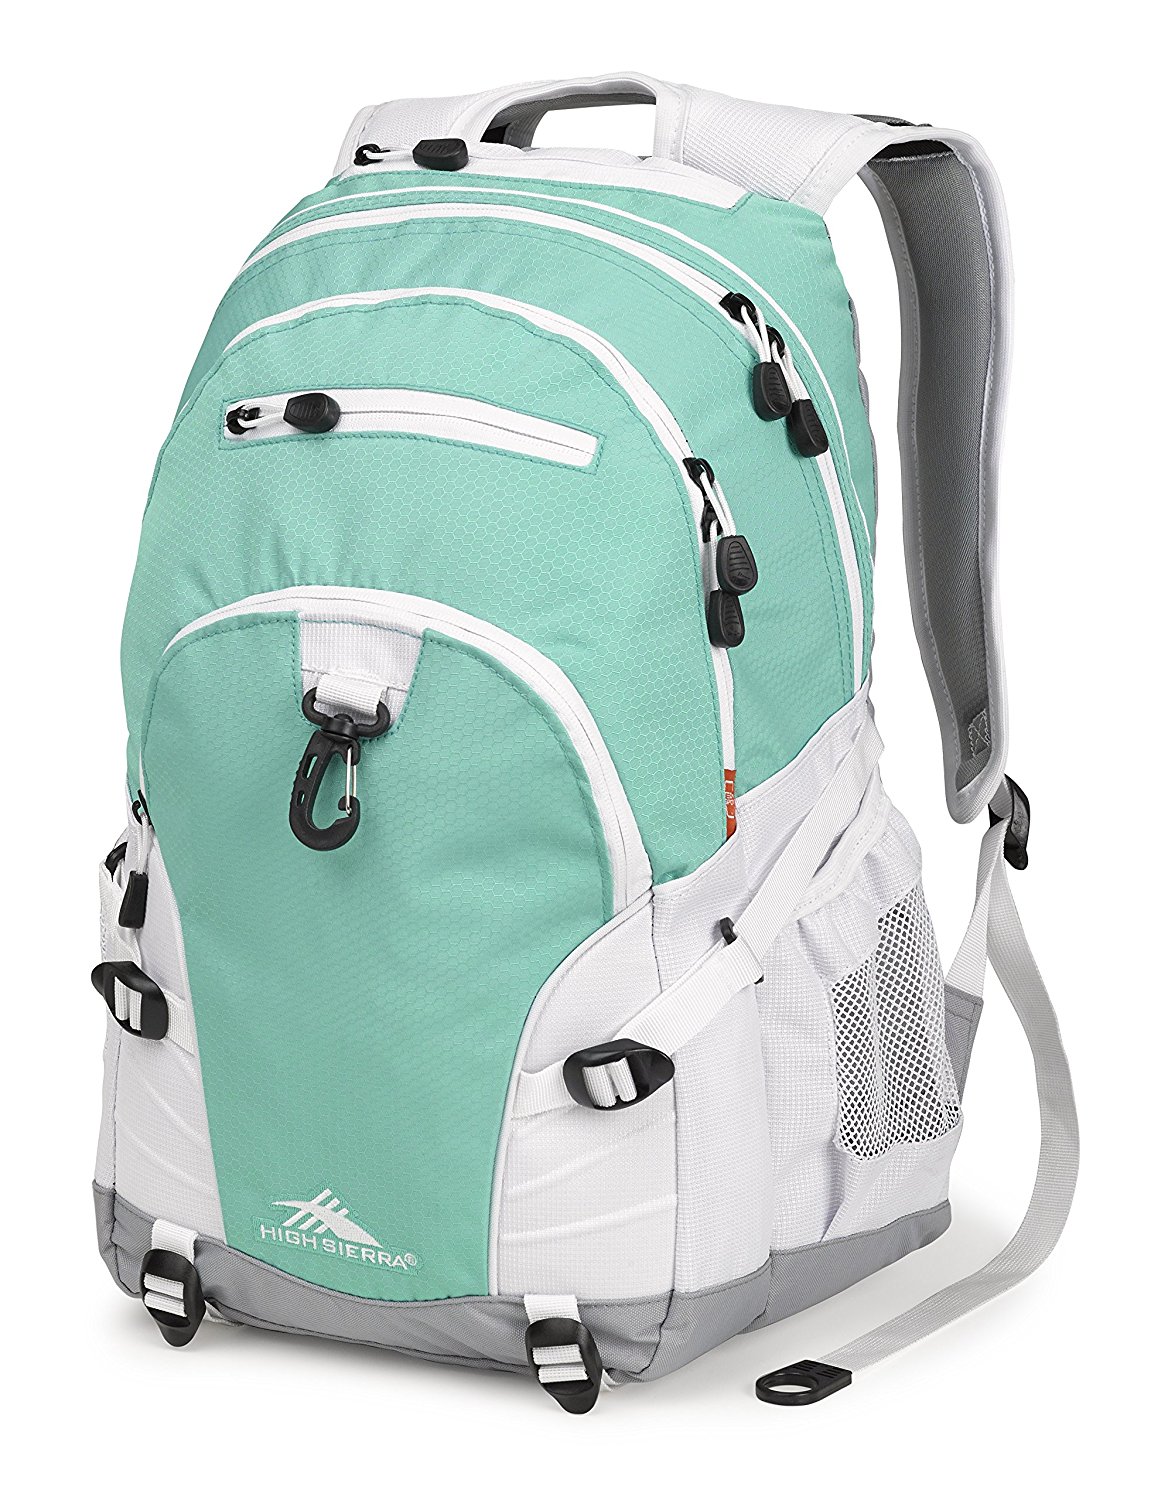 High Sierra Loop Backpack - image 1 of 4